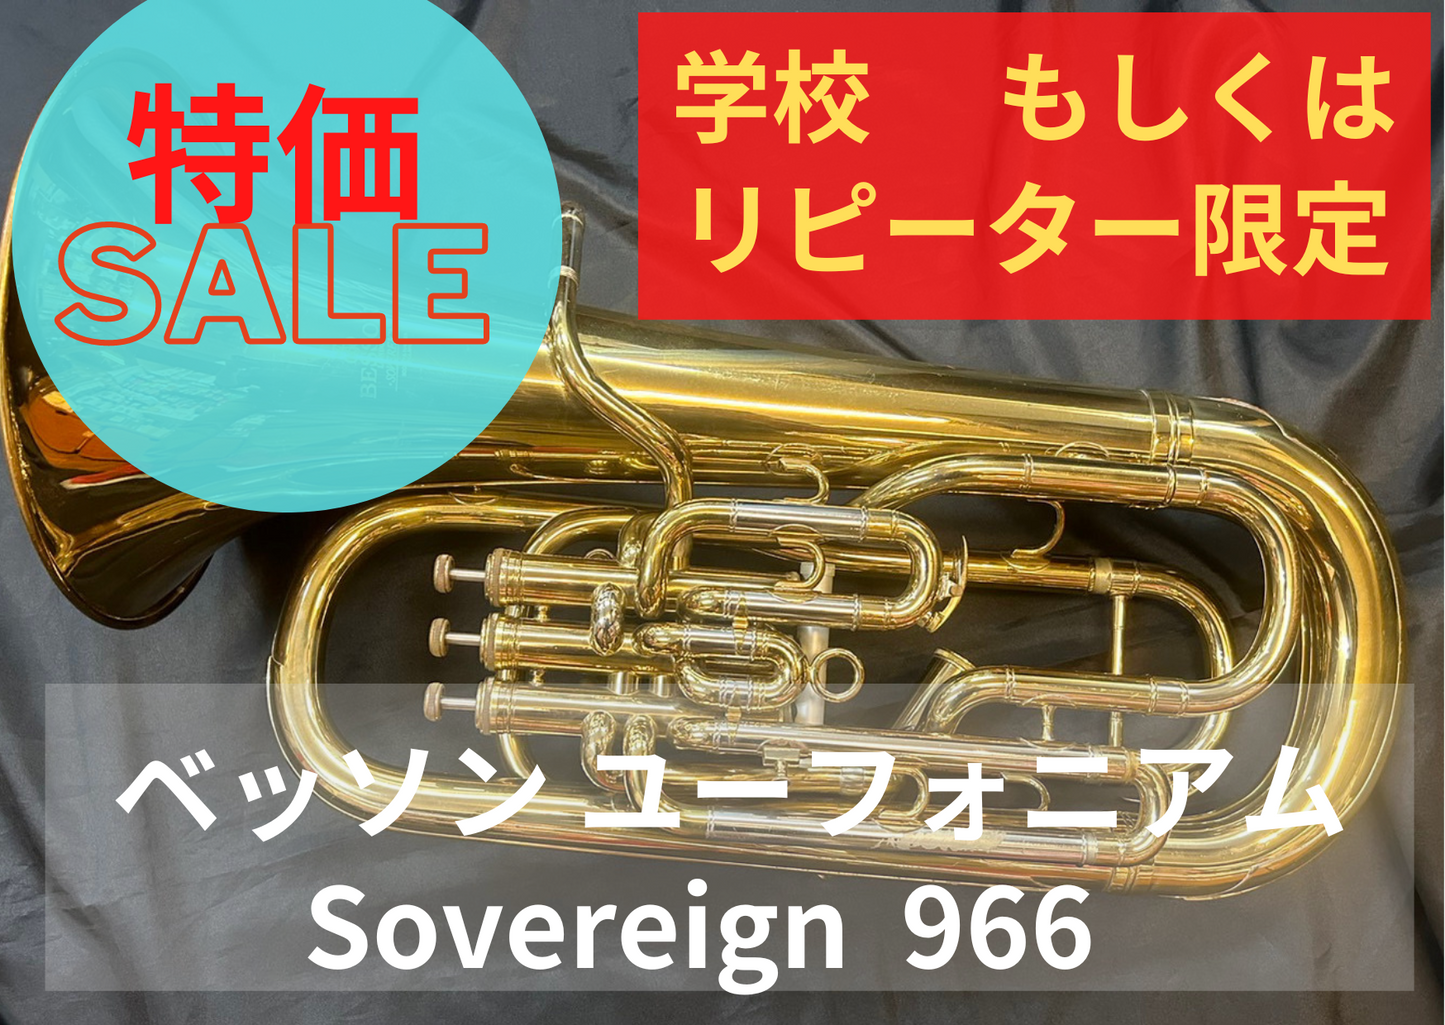 レンタル楽器 ベッソン ユーフォニアム Sovereign ソヴェリン 966